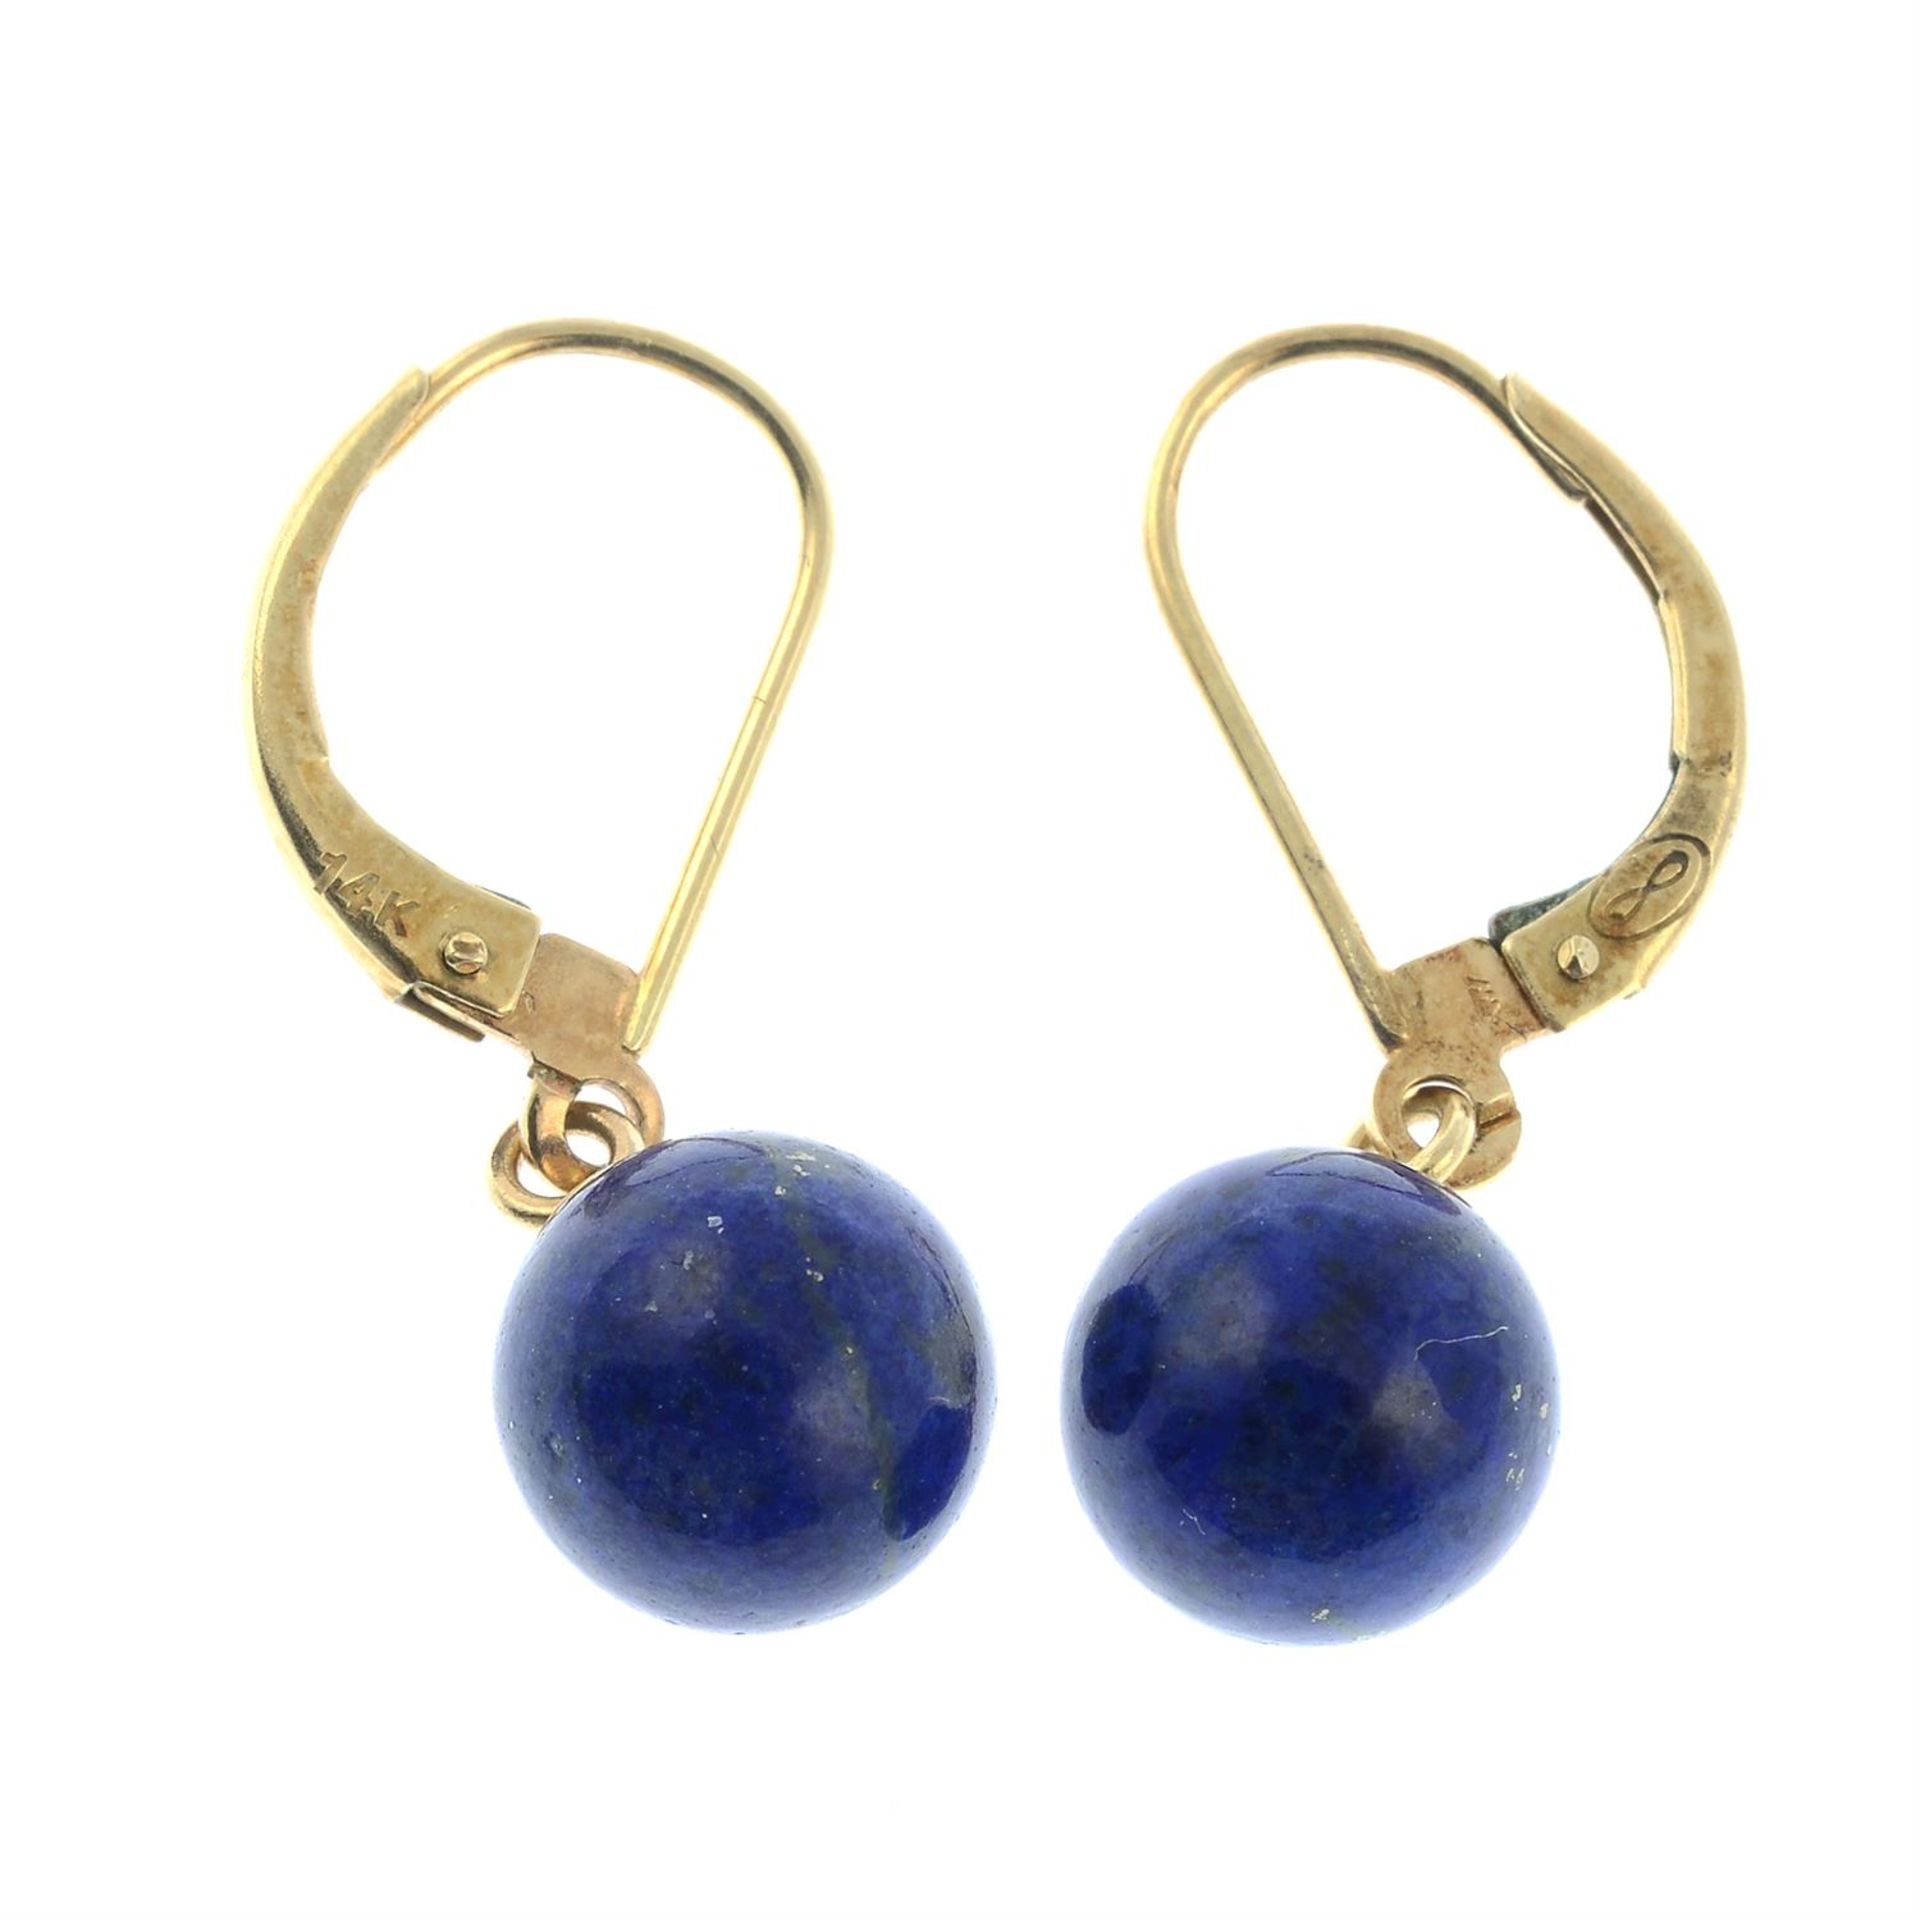 A pair of lapis lazuli drop earrings.